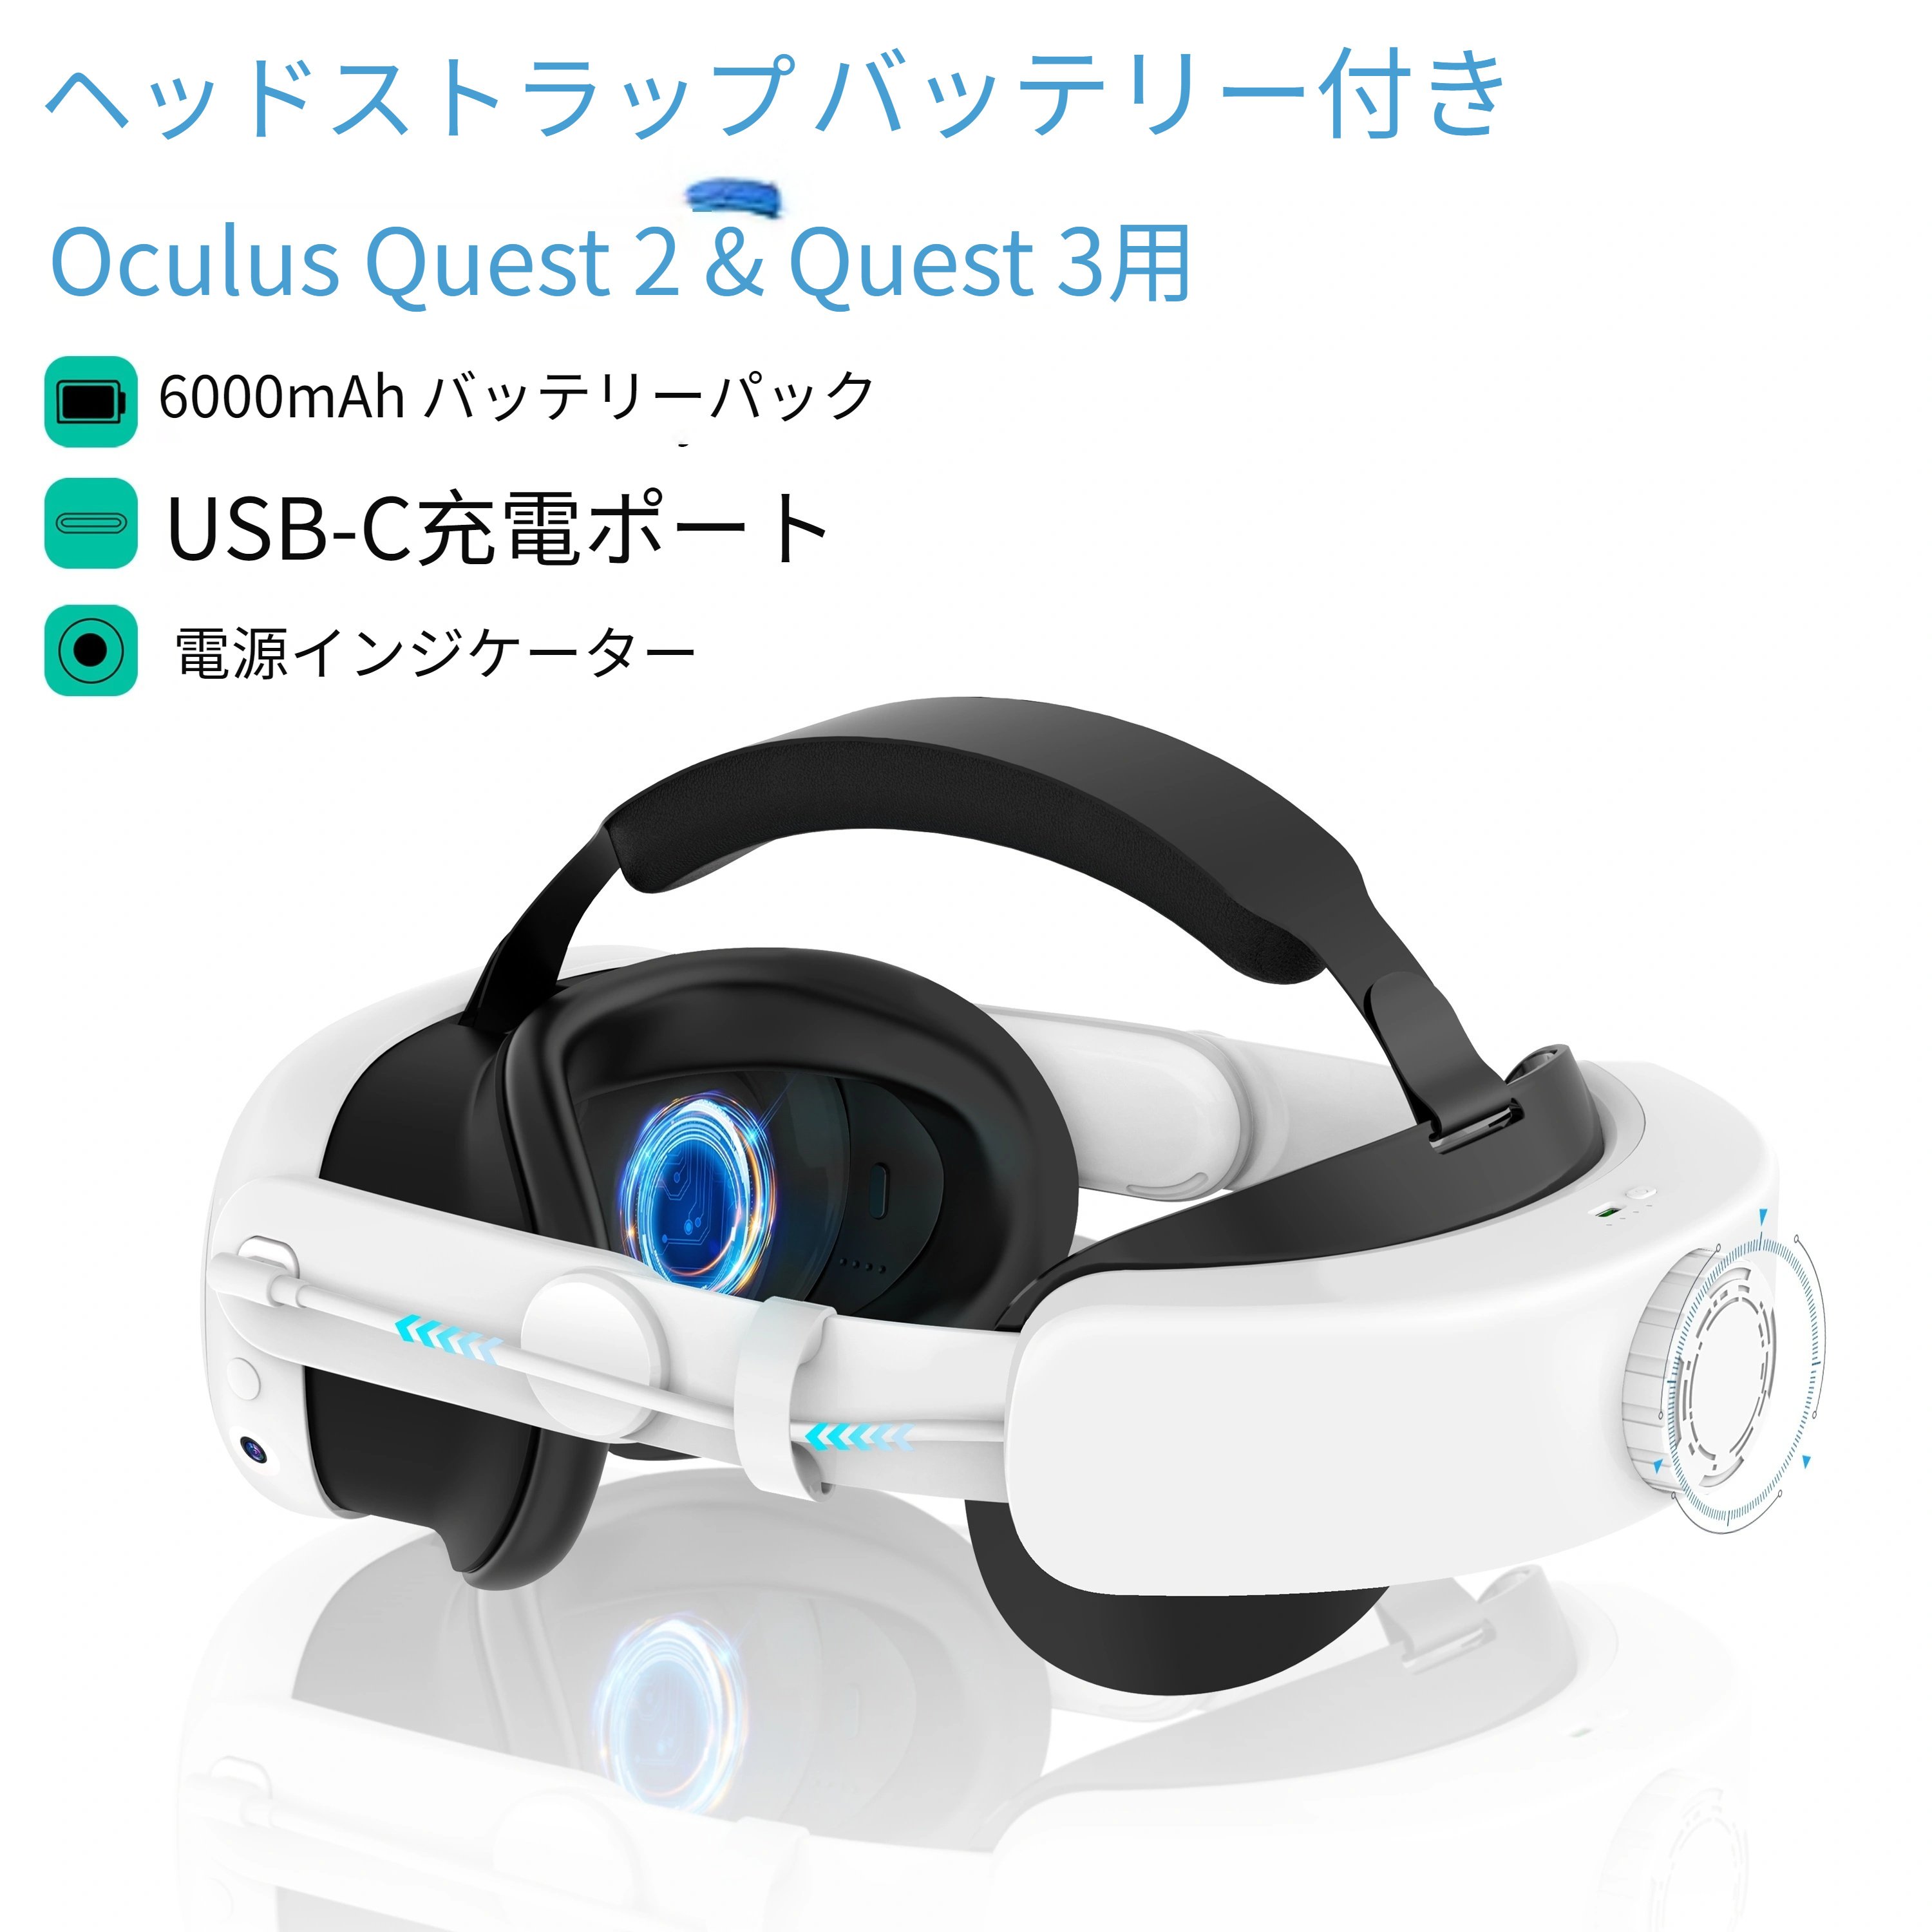 Oculus Quest 2 & Quest  3用バッテリー付きヘッドストラップ、6000mAh急速充電VR電源、カウンターバランス、VRの快適性を向上させる調整可能なヘッドストラップ  ハロウィーン/感謝祭/クリスマスギフト用